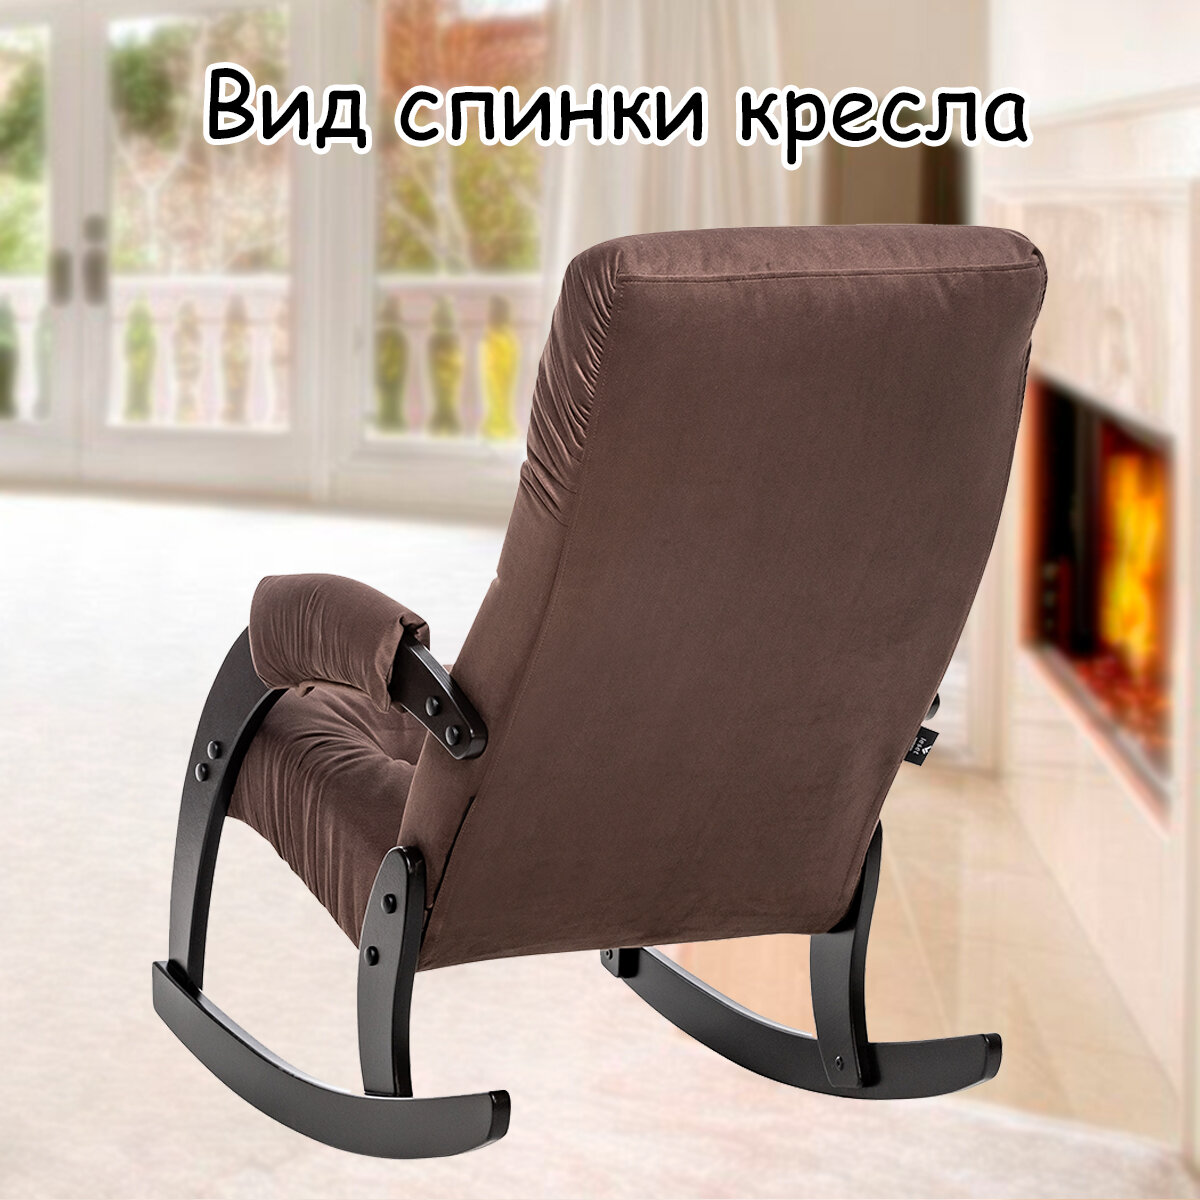 Кресло-качалка для взрослых 54х95х100 см, модель 67, maxx, цвет: Мaxx 235 (коричневый), каркас: Venge (черный) - фотография № 8